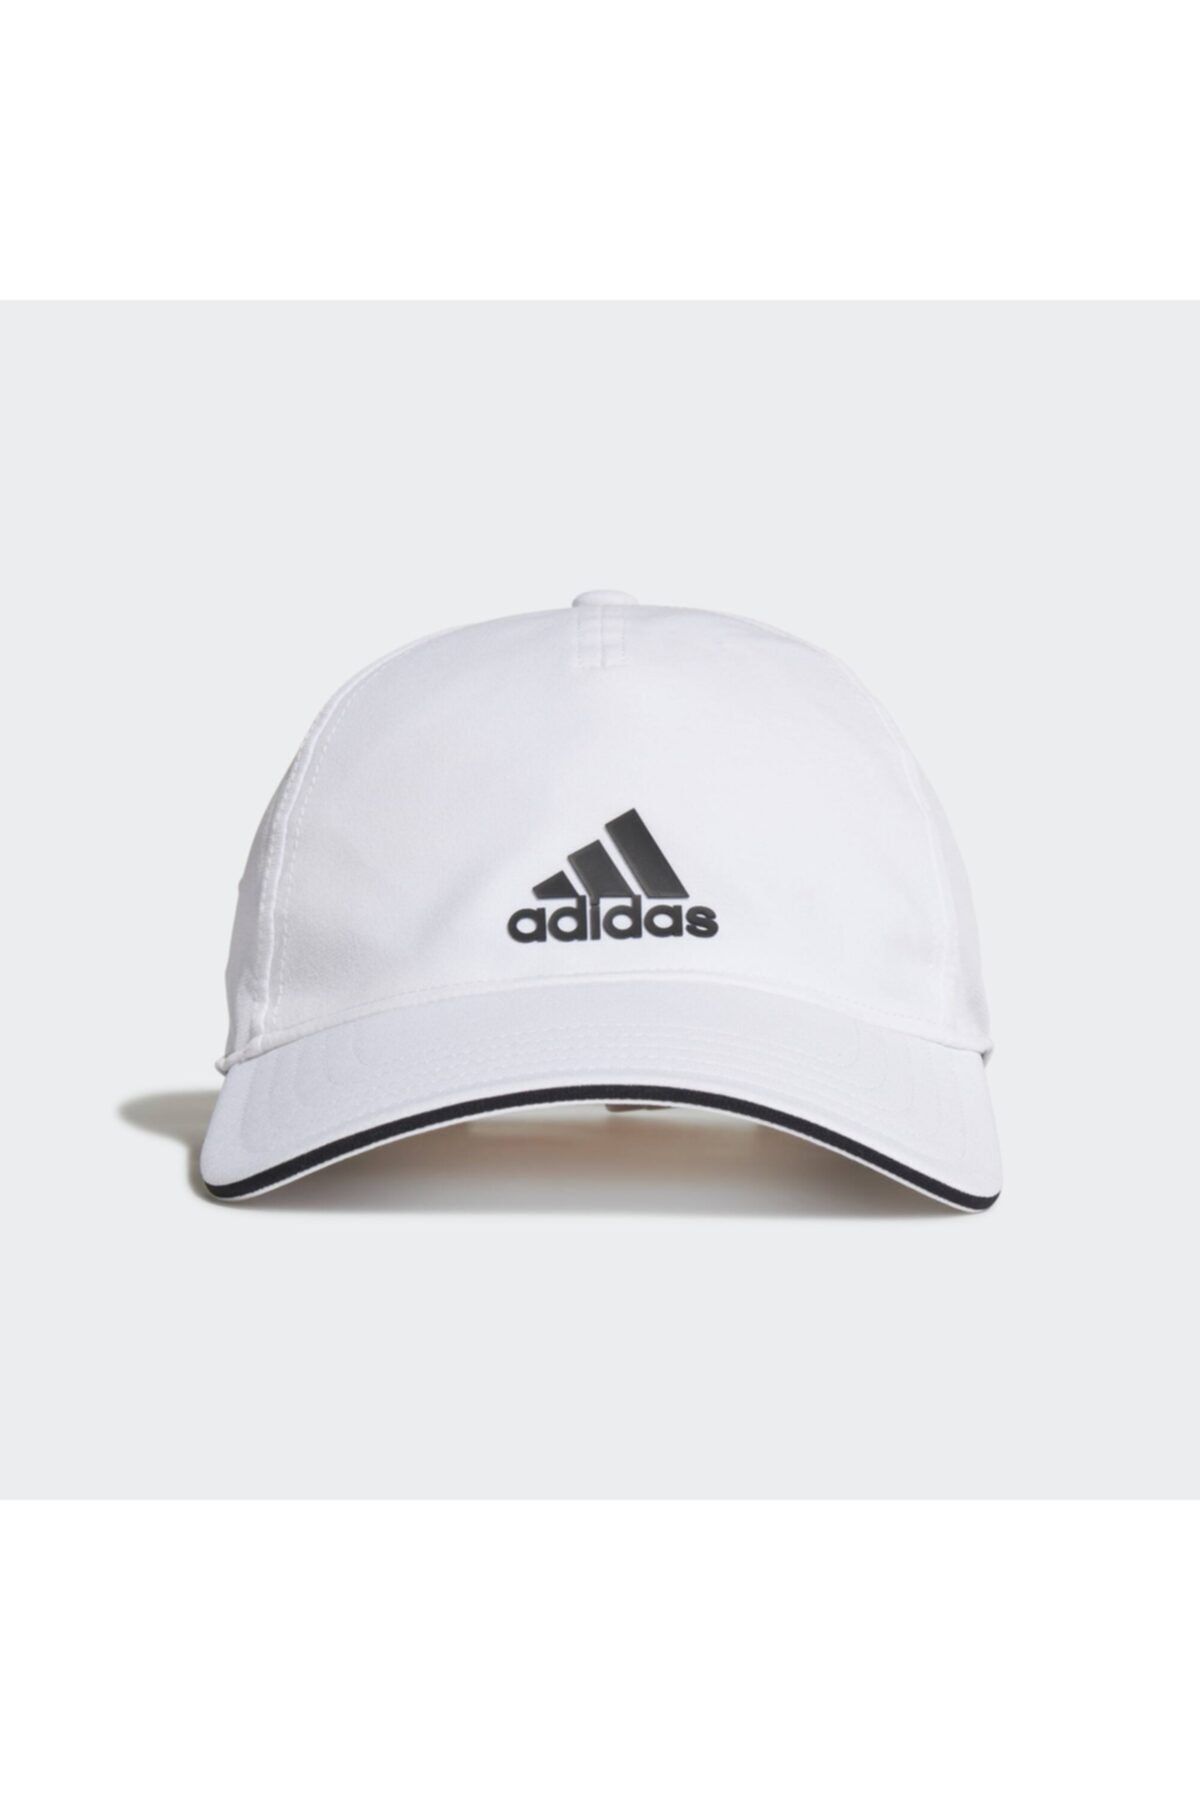 adidas Aeroready Beyaz Beyzbol Şapkası (gm4510)